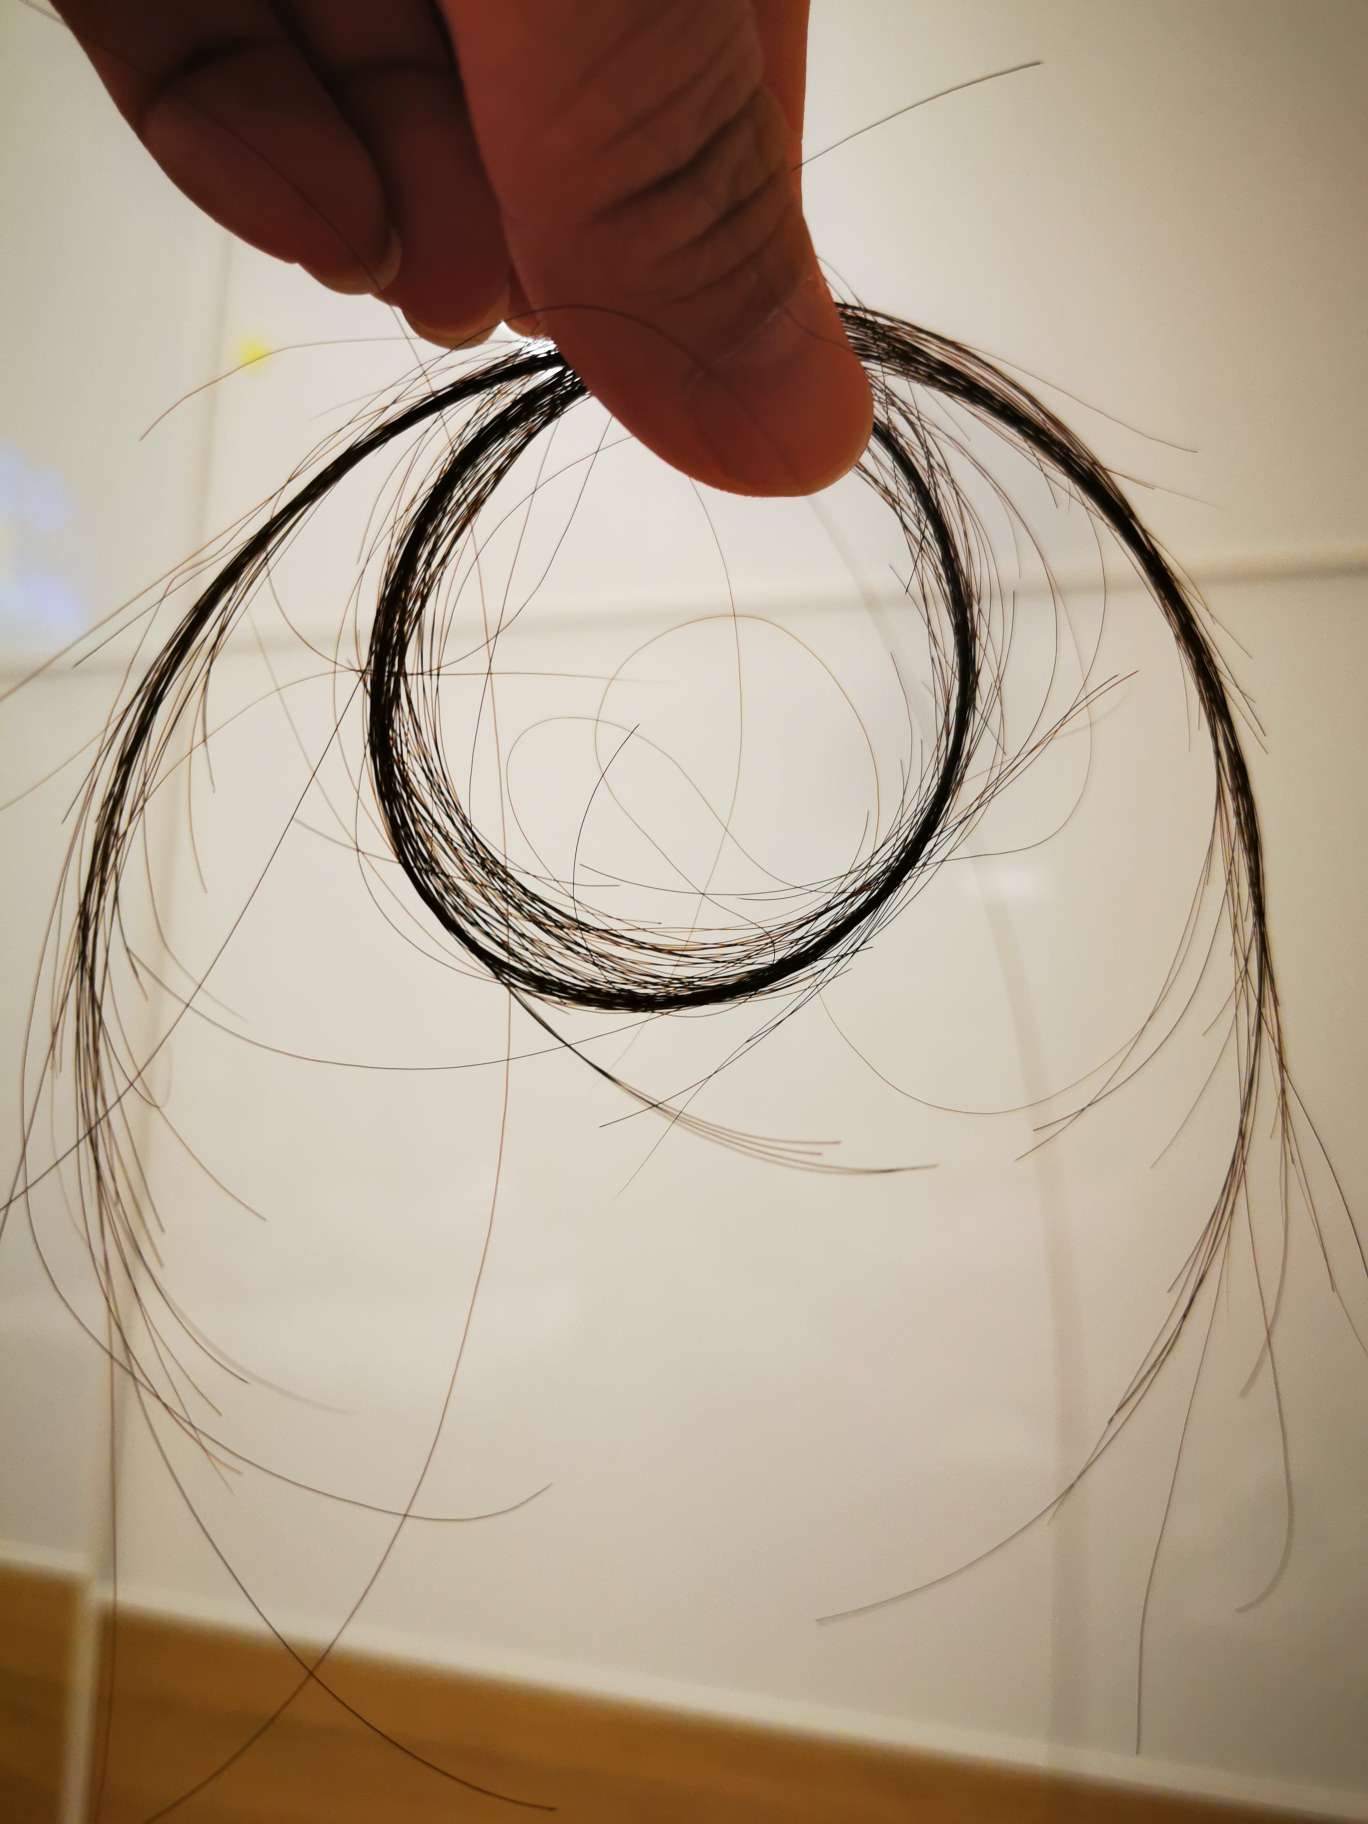 女人化疗头发掉光图片图片